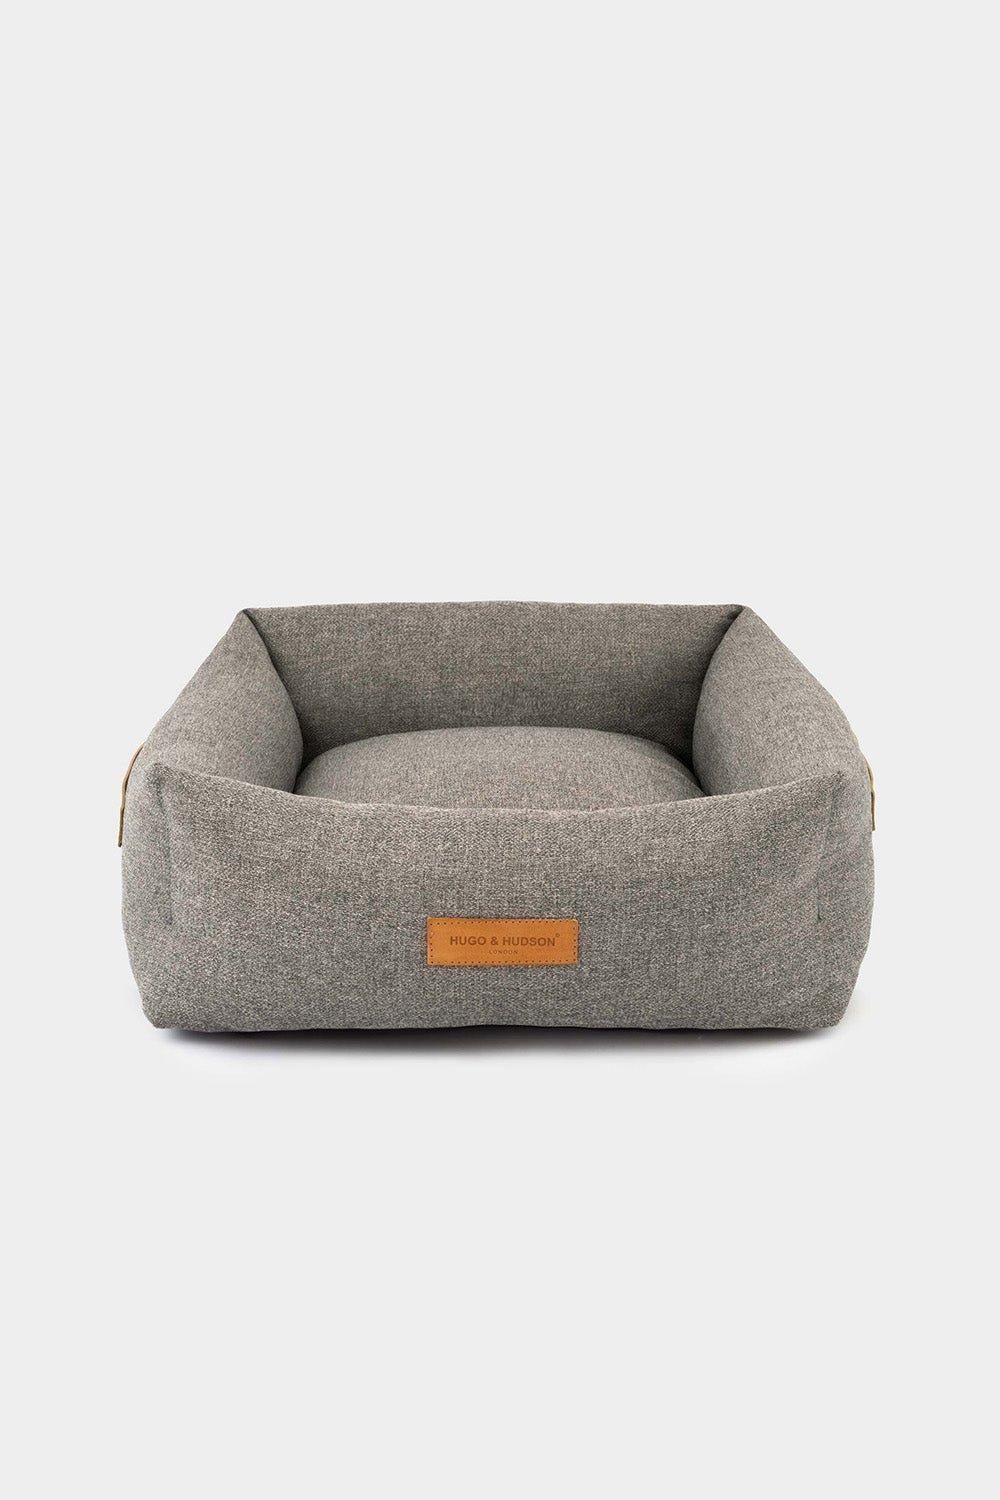 Luxury Pet Dog Bed Basket